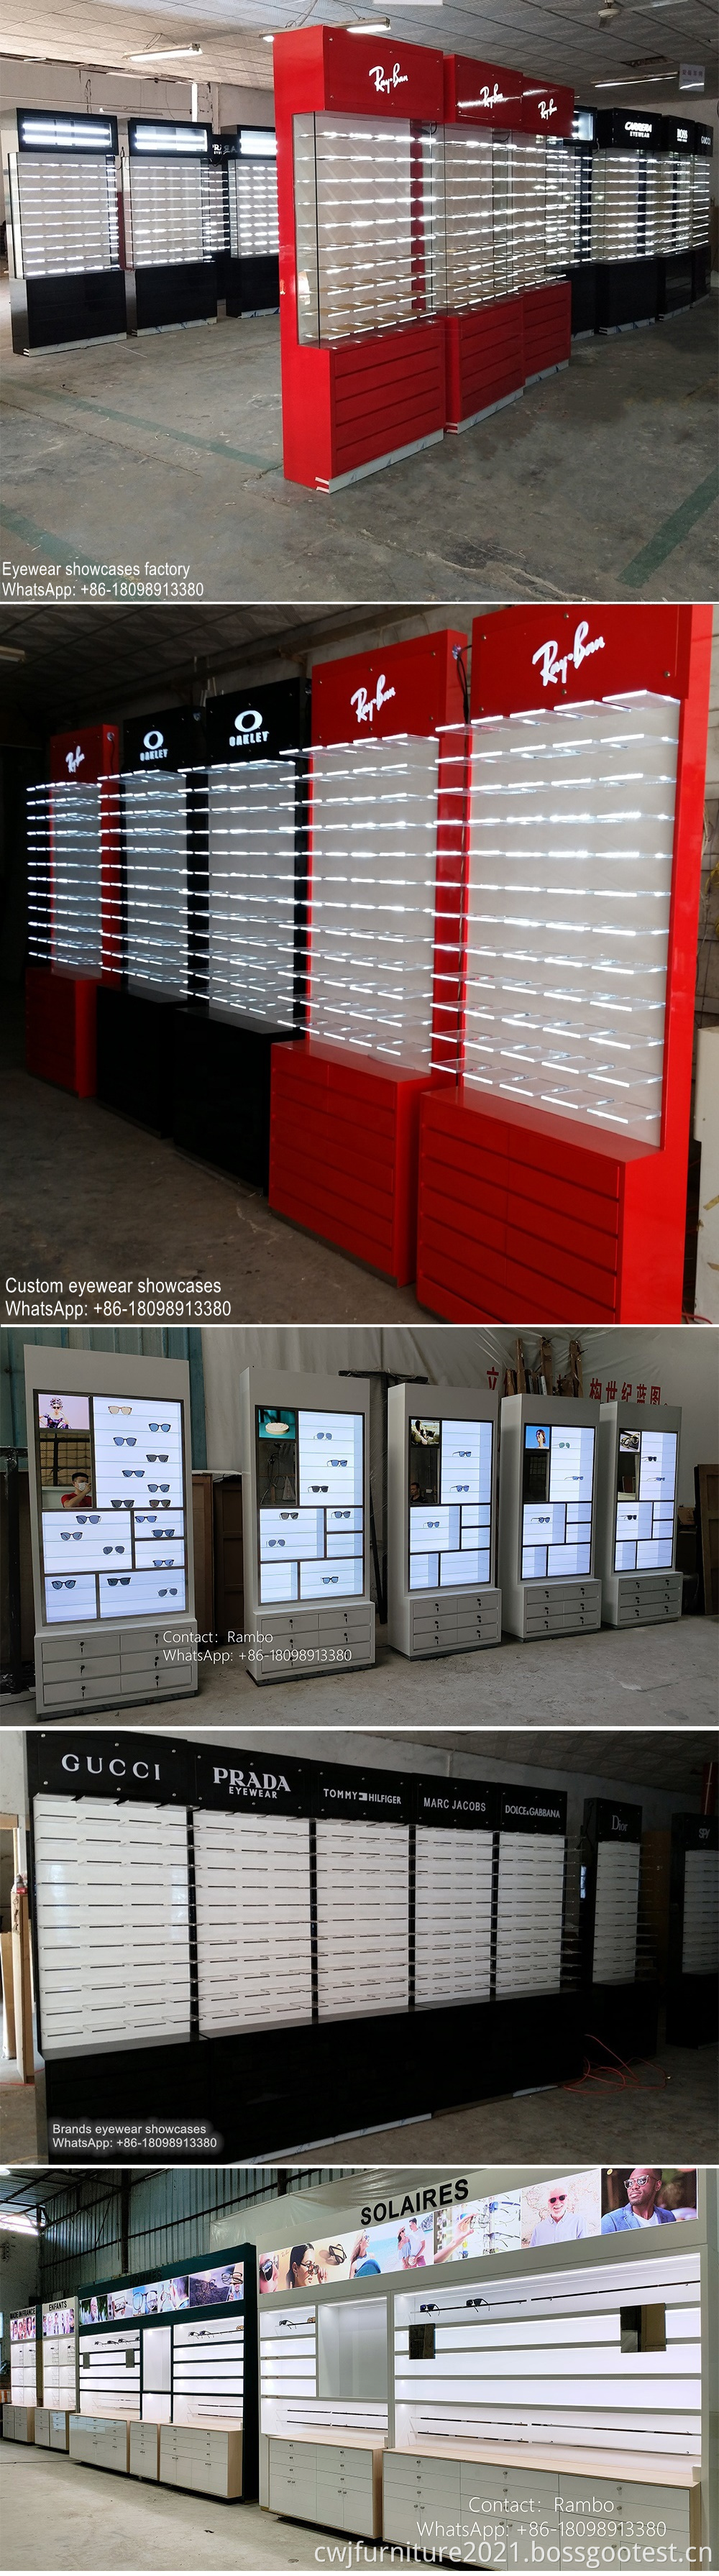 optical shop displays